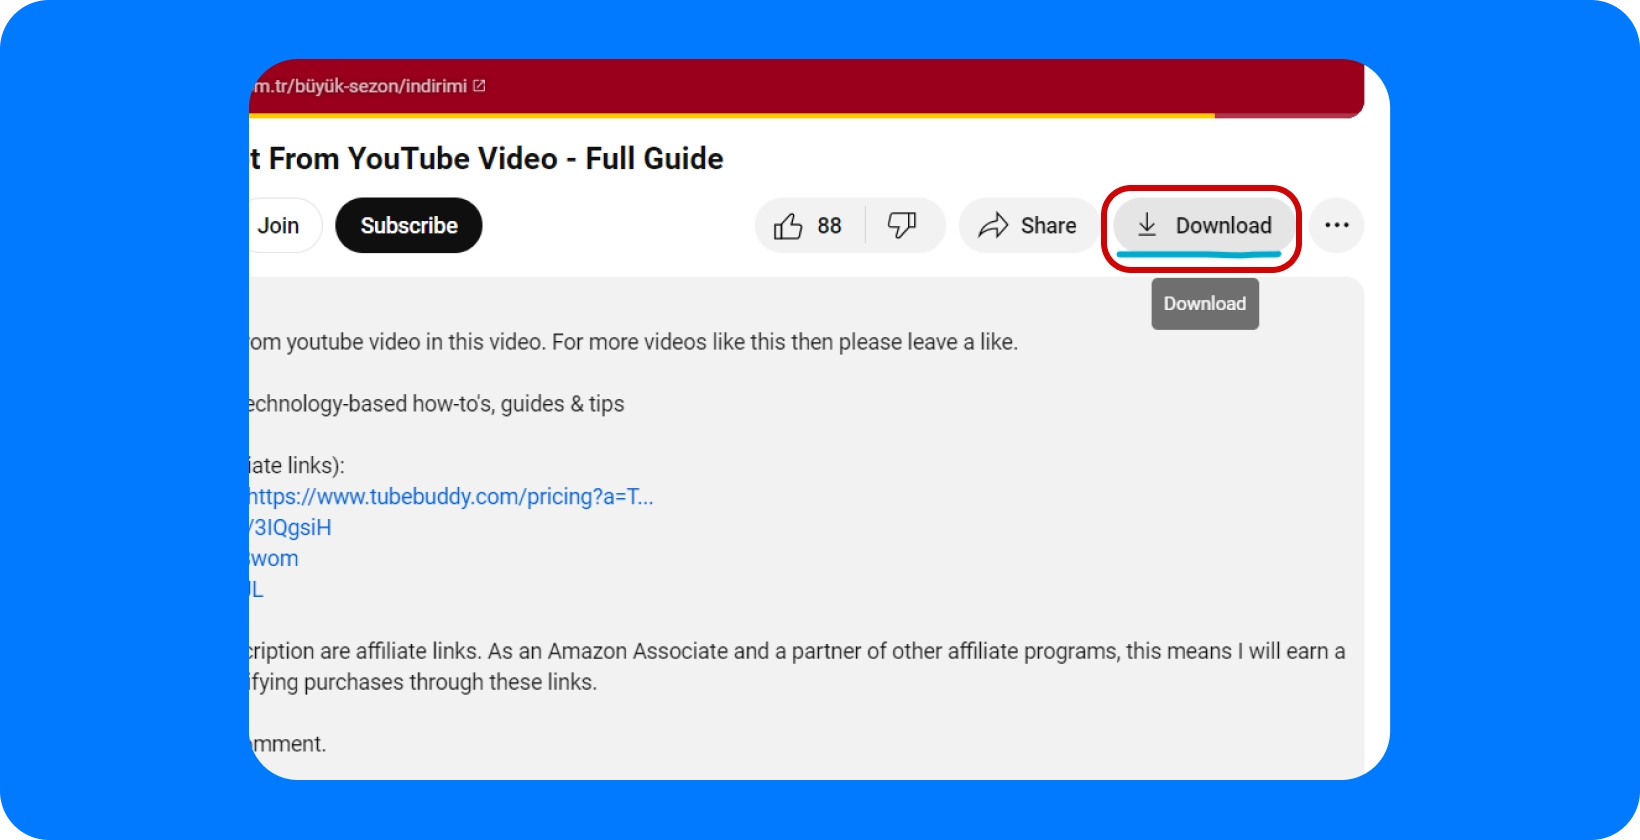 YouTube descrição do vídeo detalhando um guia completo sobre como extrair vídeo, com o botão de download.